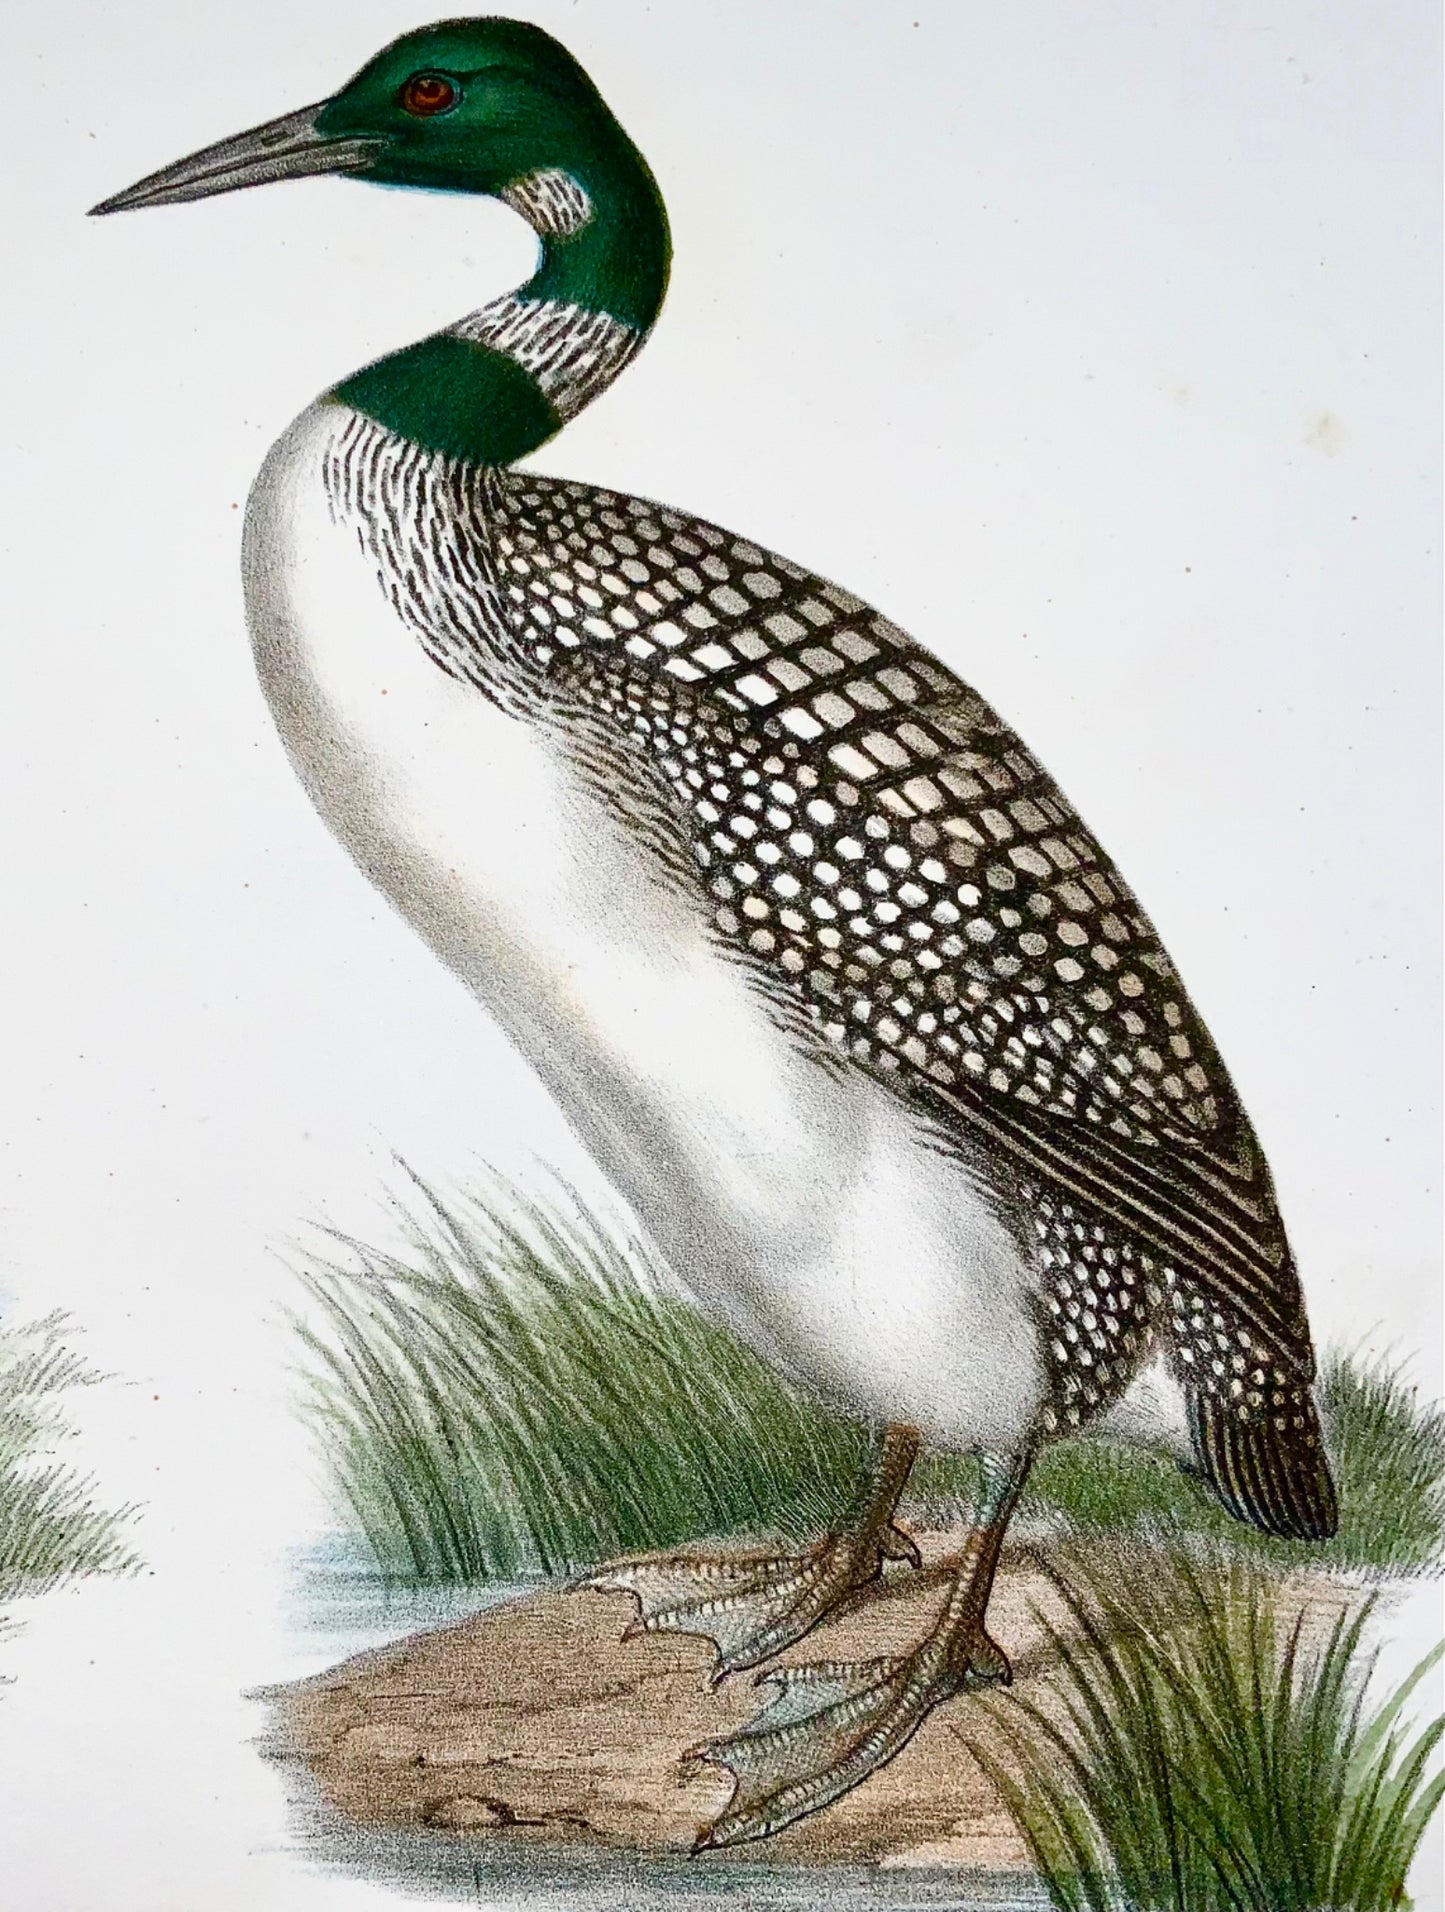 1860 Svasso, Loon, Fitzinger, litografia a colori rifinita a mano, ornitologia